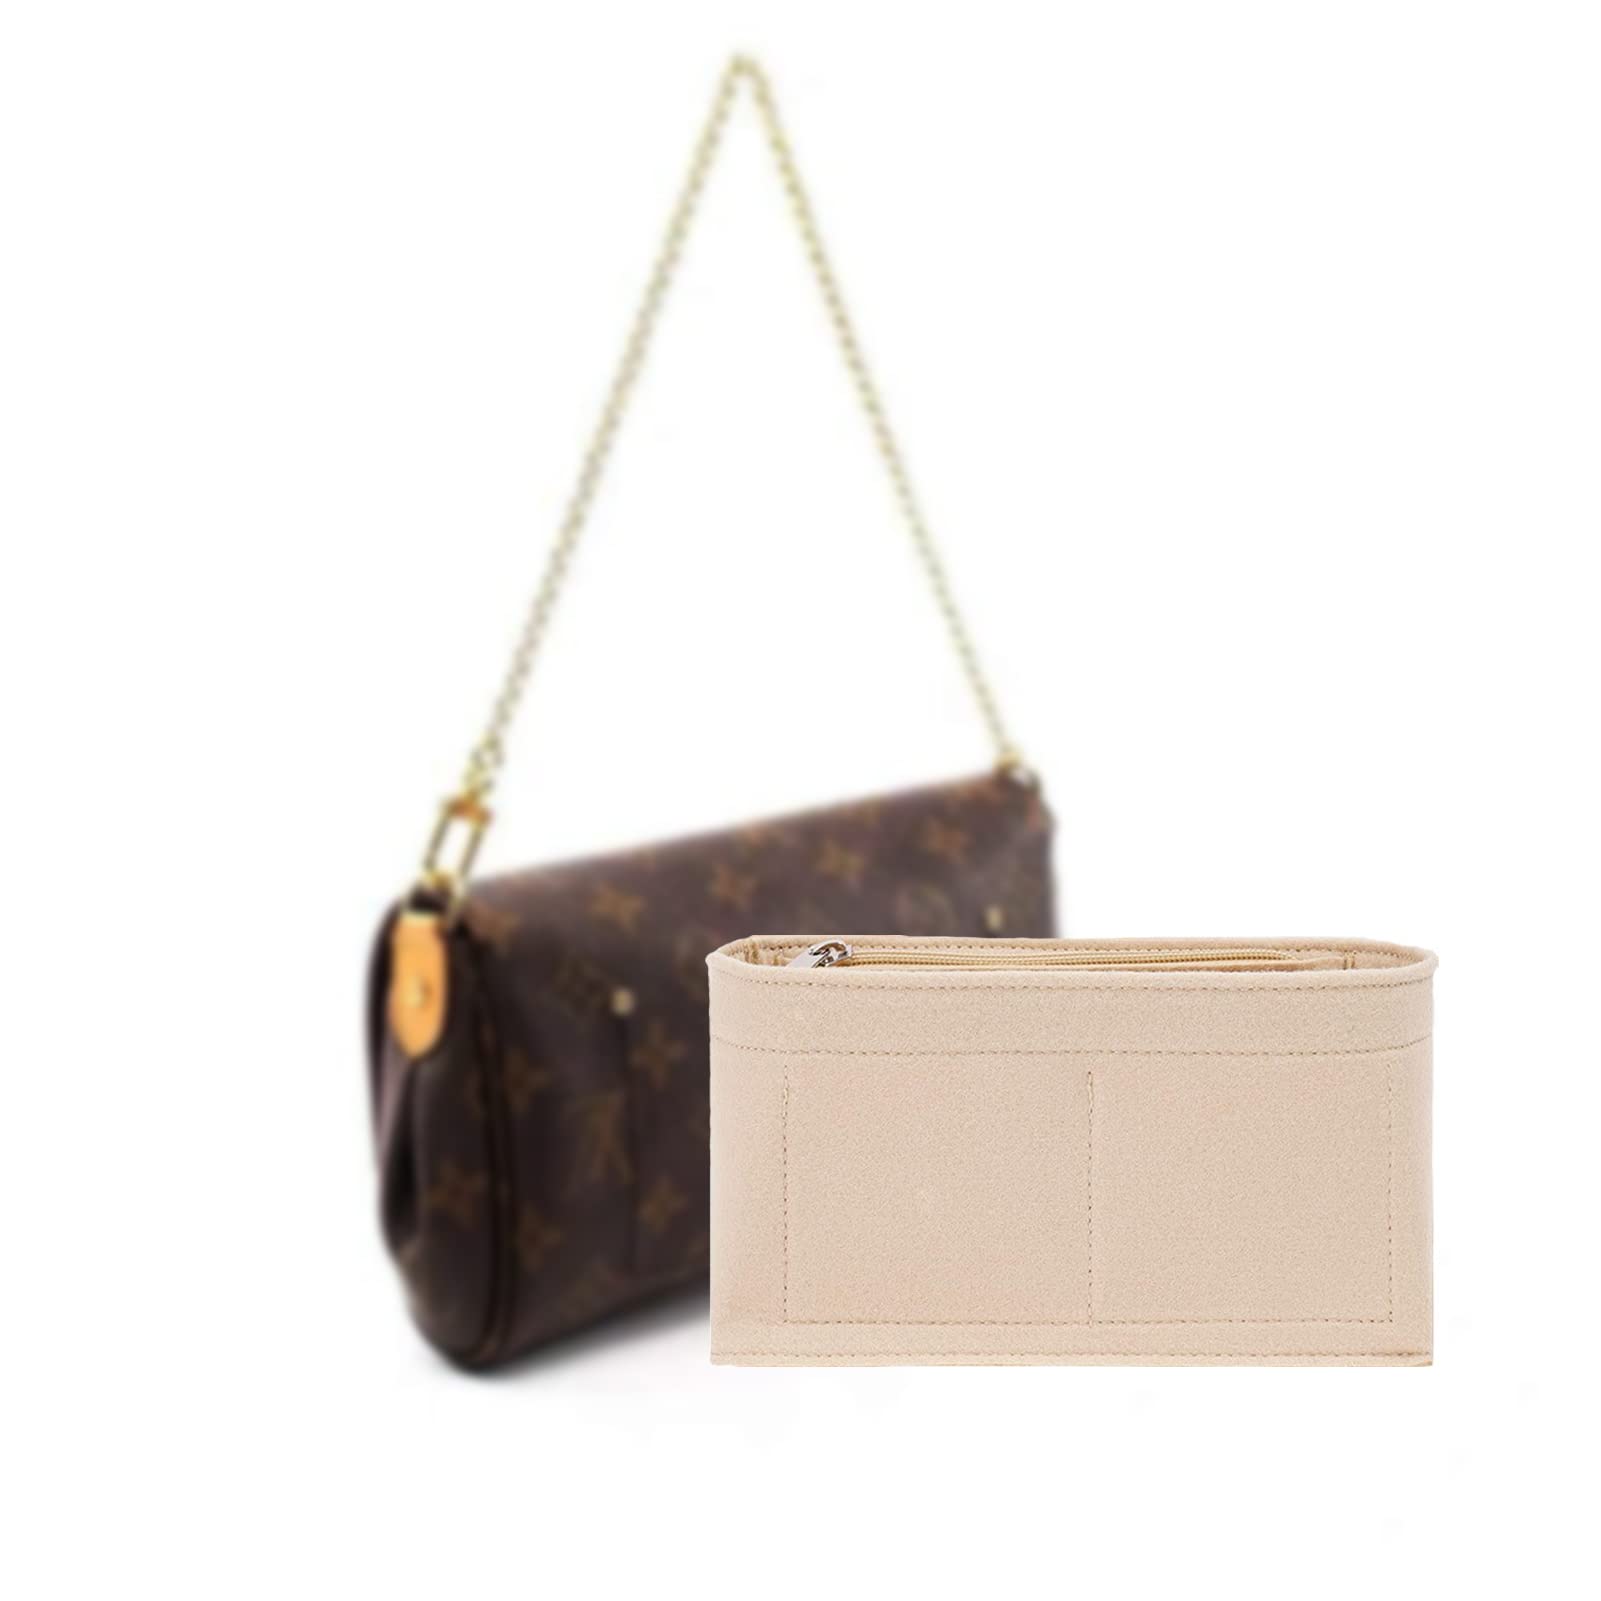 OOD Felt wallet manager bag handbag pocket multi bag accessories pocket zipper bag (beige)